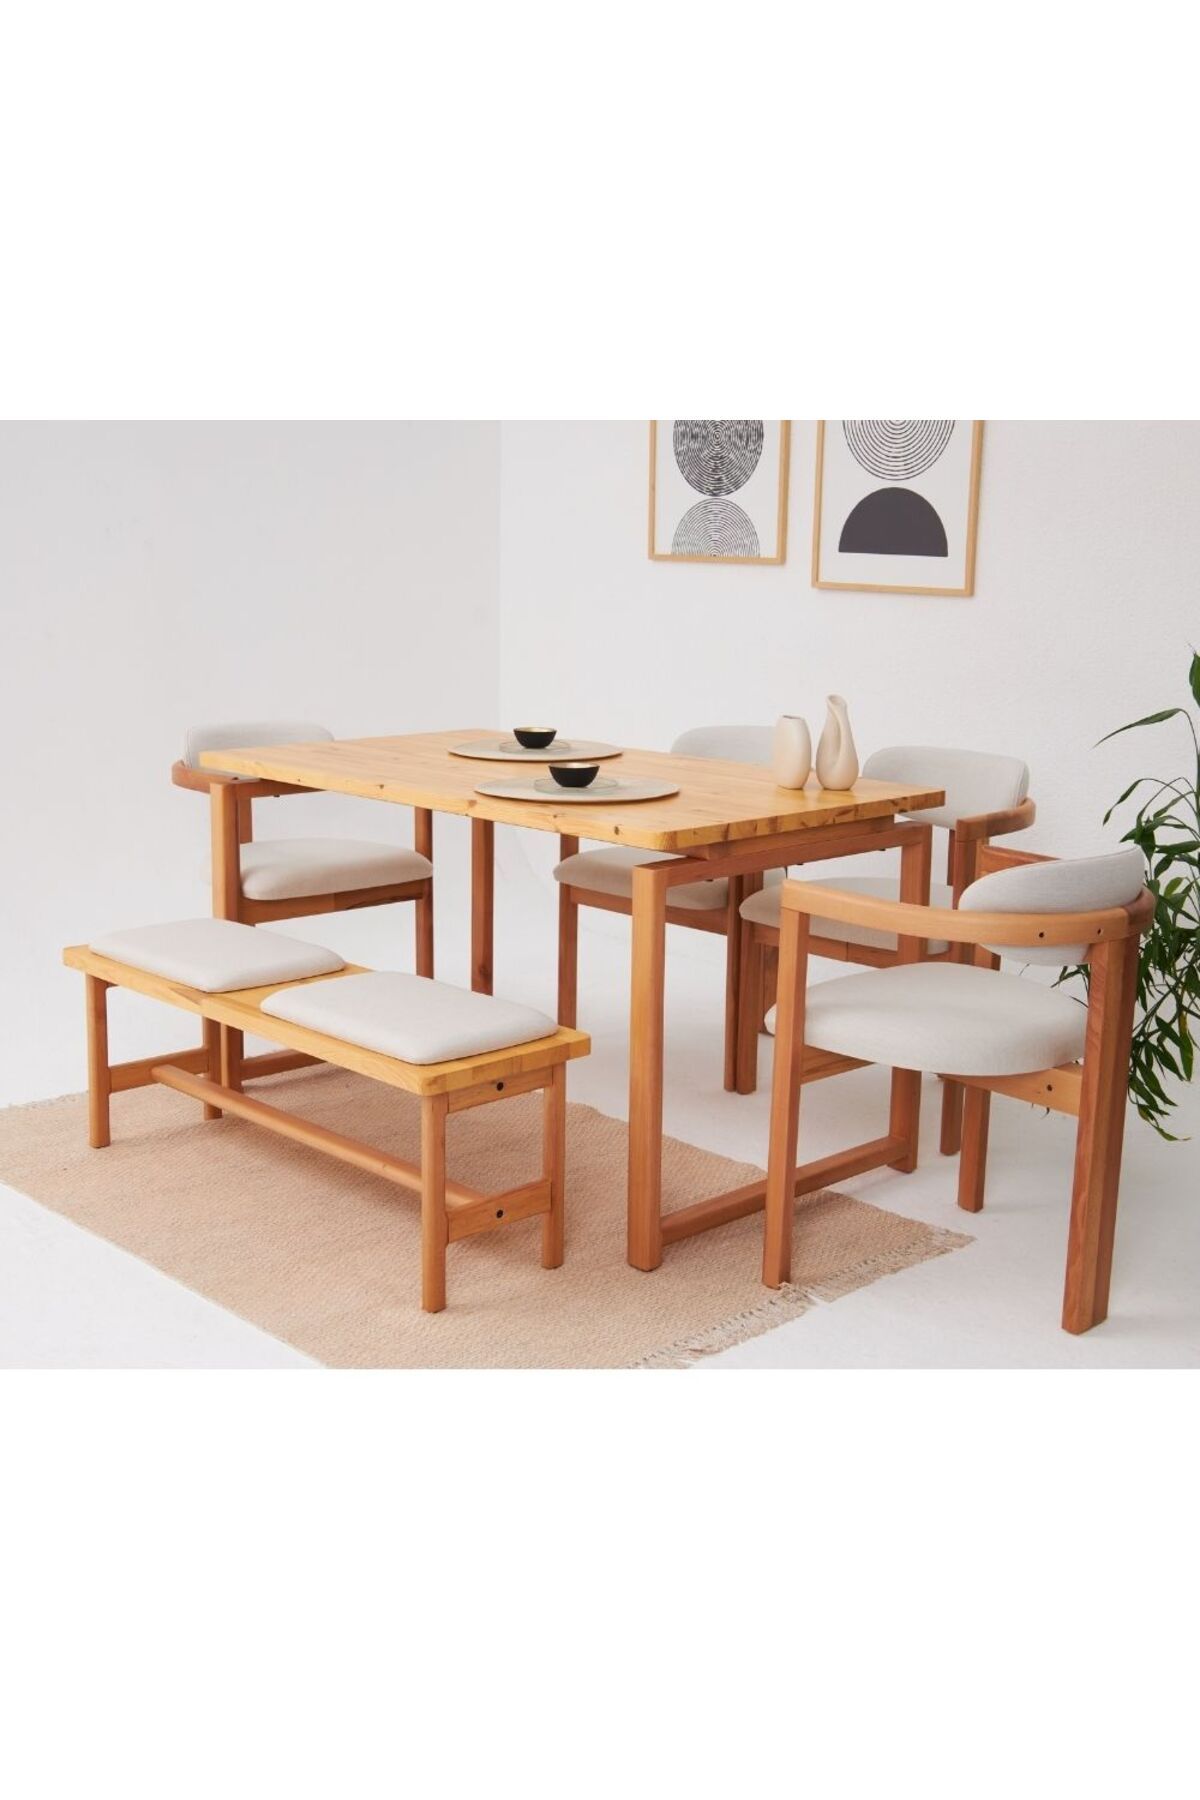 Genel Markalar Cheri İskandinav 4 Sandalye 1 Bench 1 Masa Doğal Masif Yemek Mutfak Masa Takımı El İşçiliği